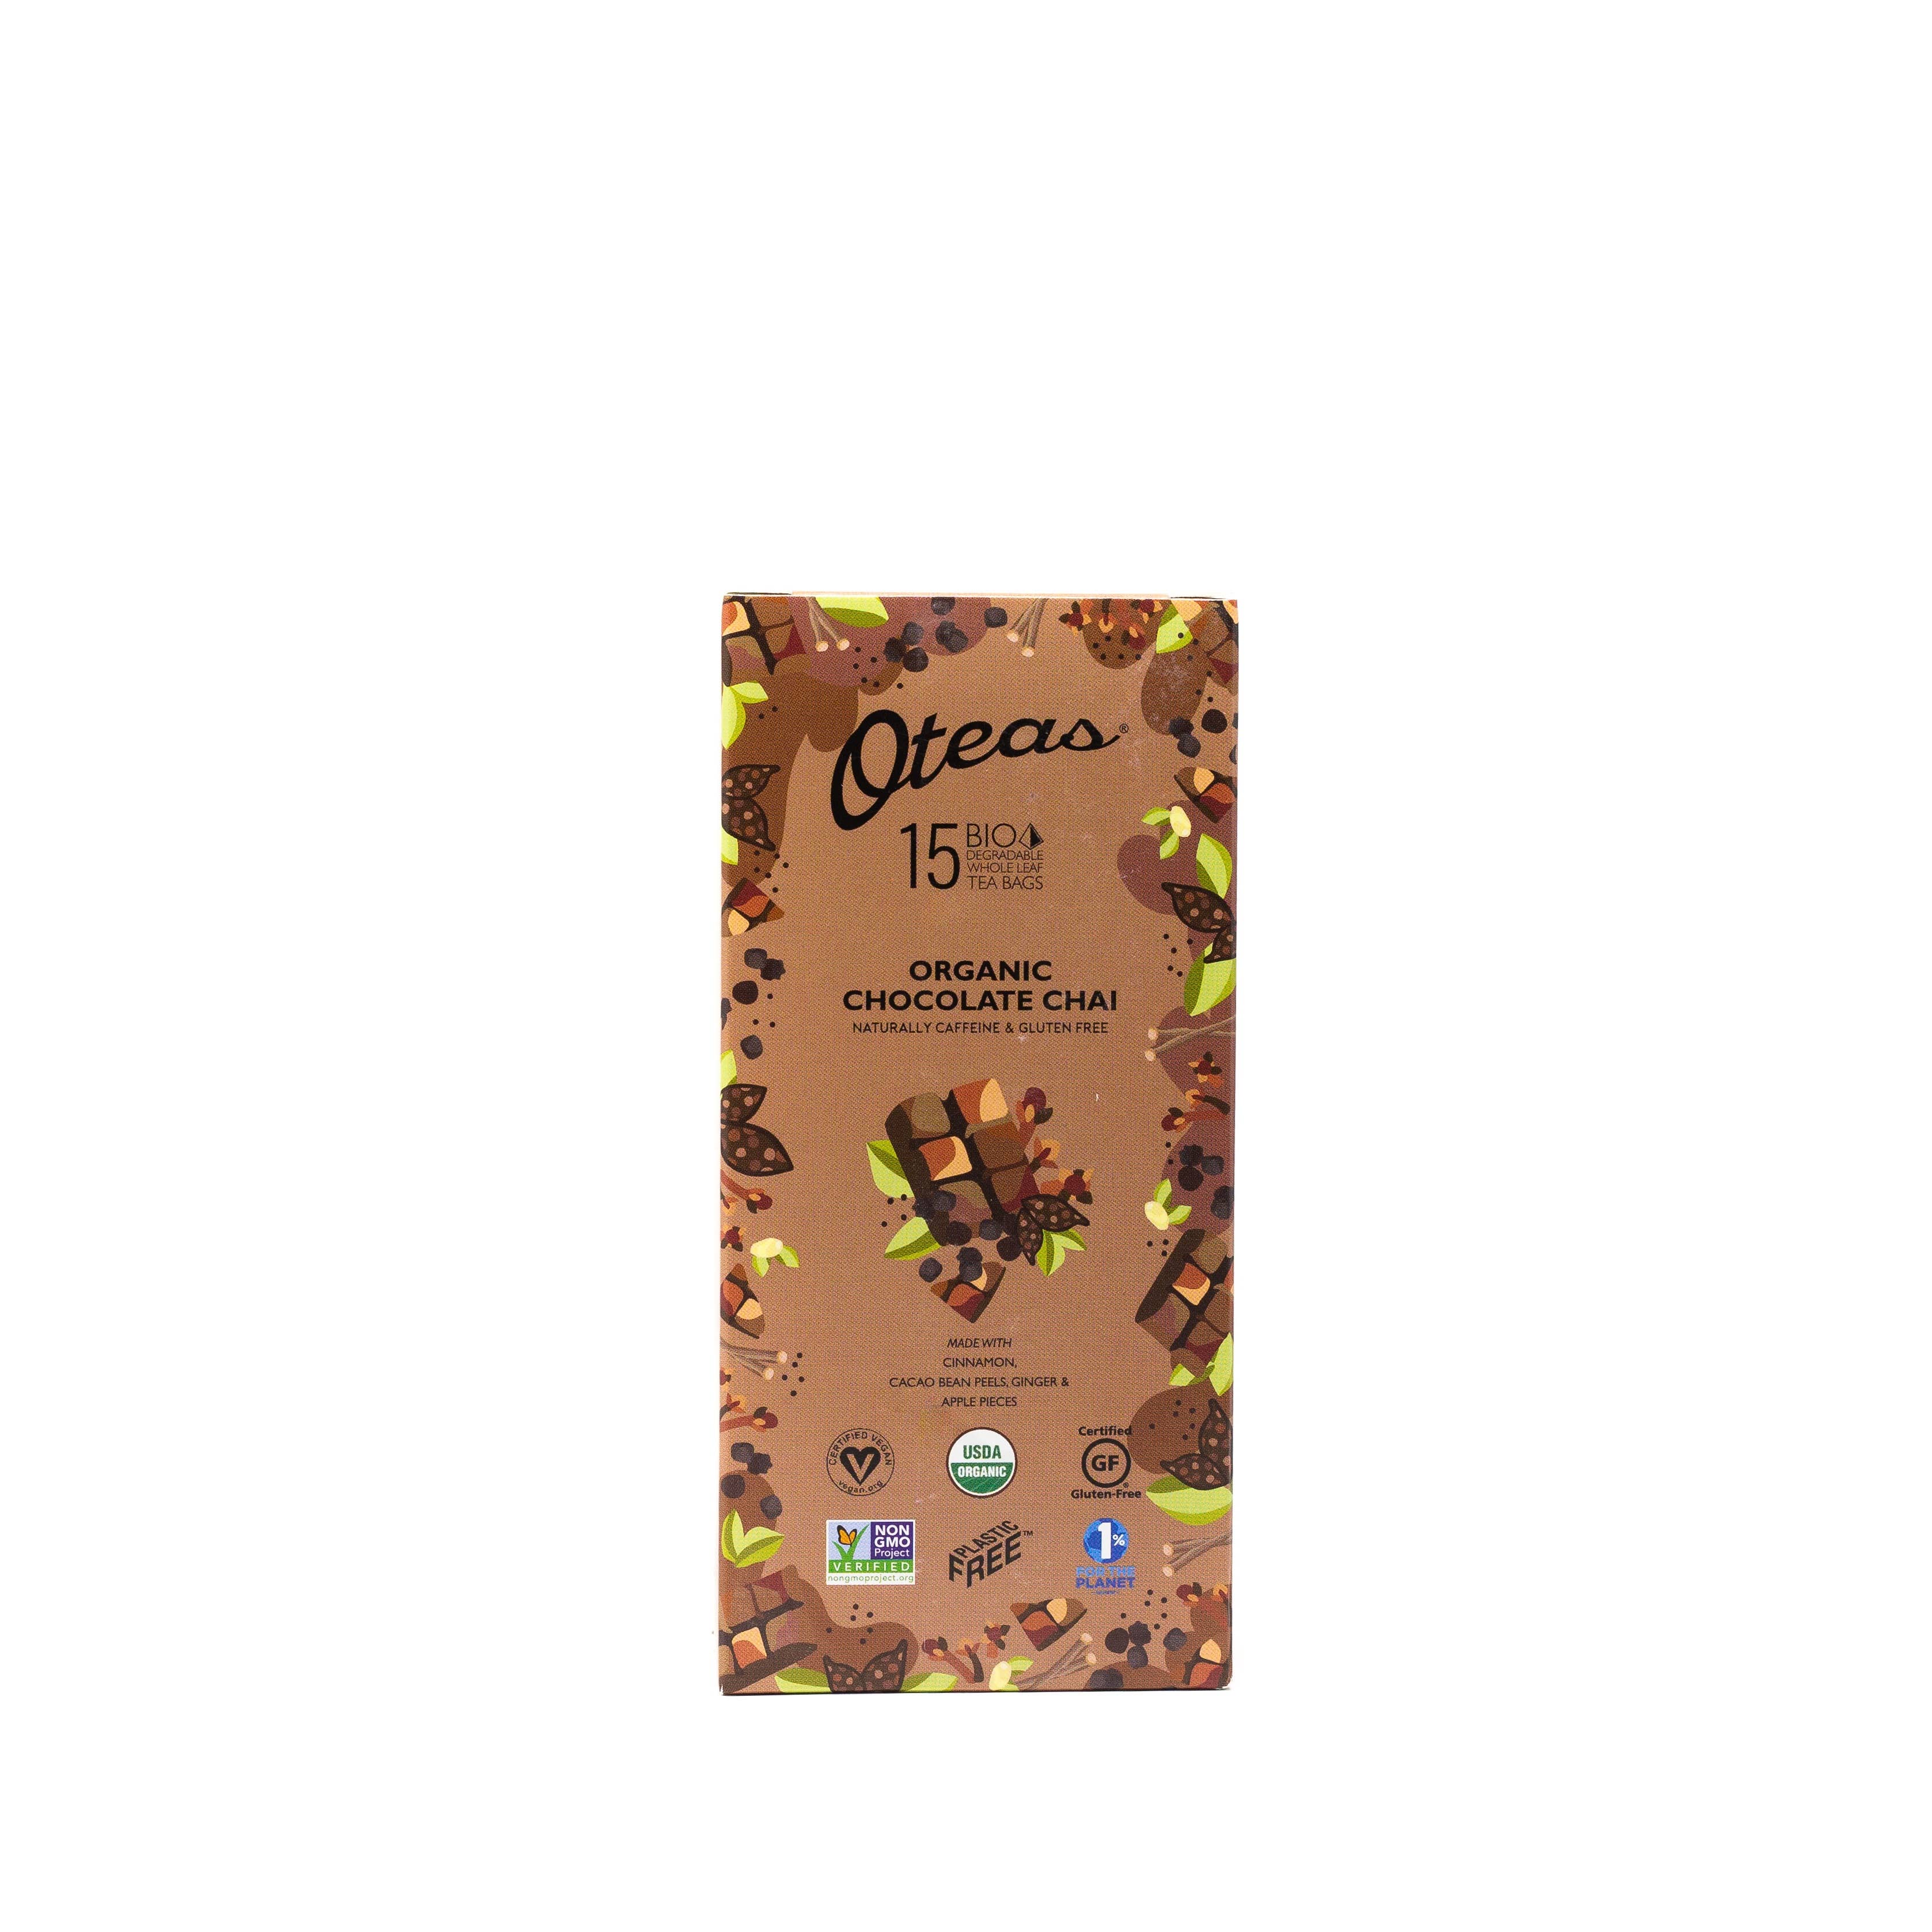 Oteas - Organic Chocolate Chai